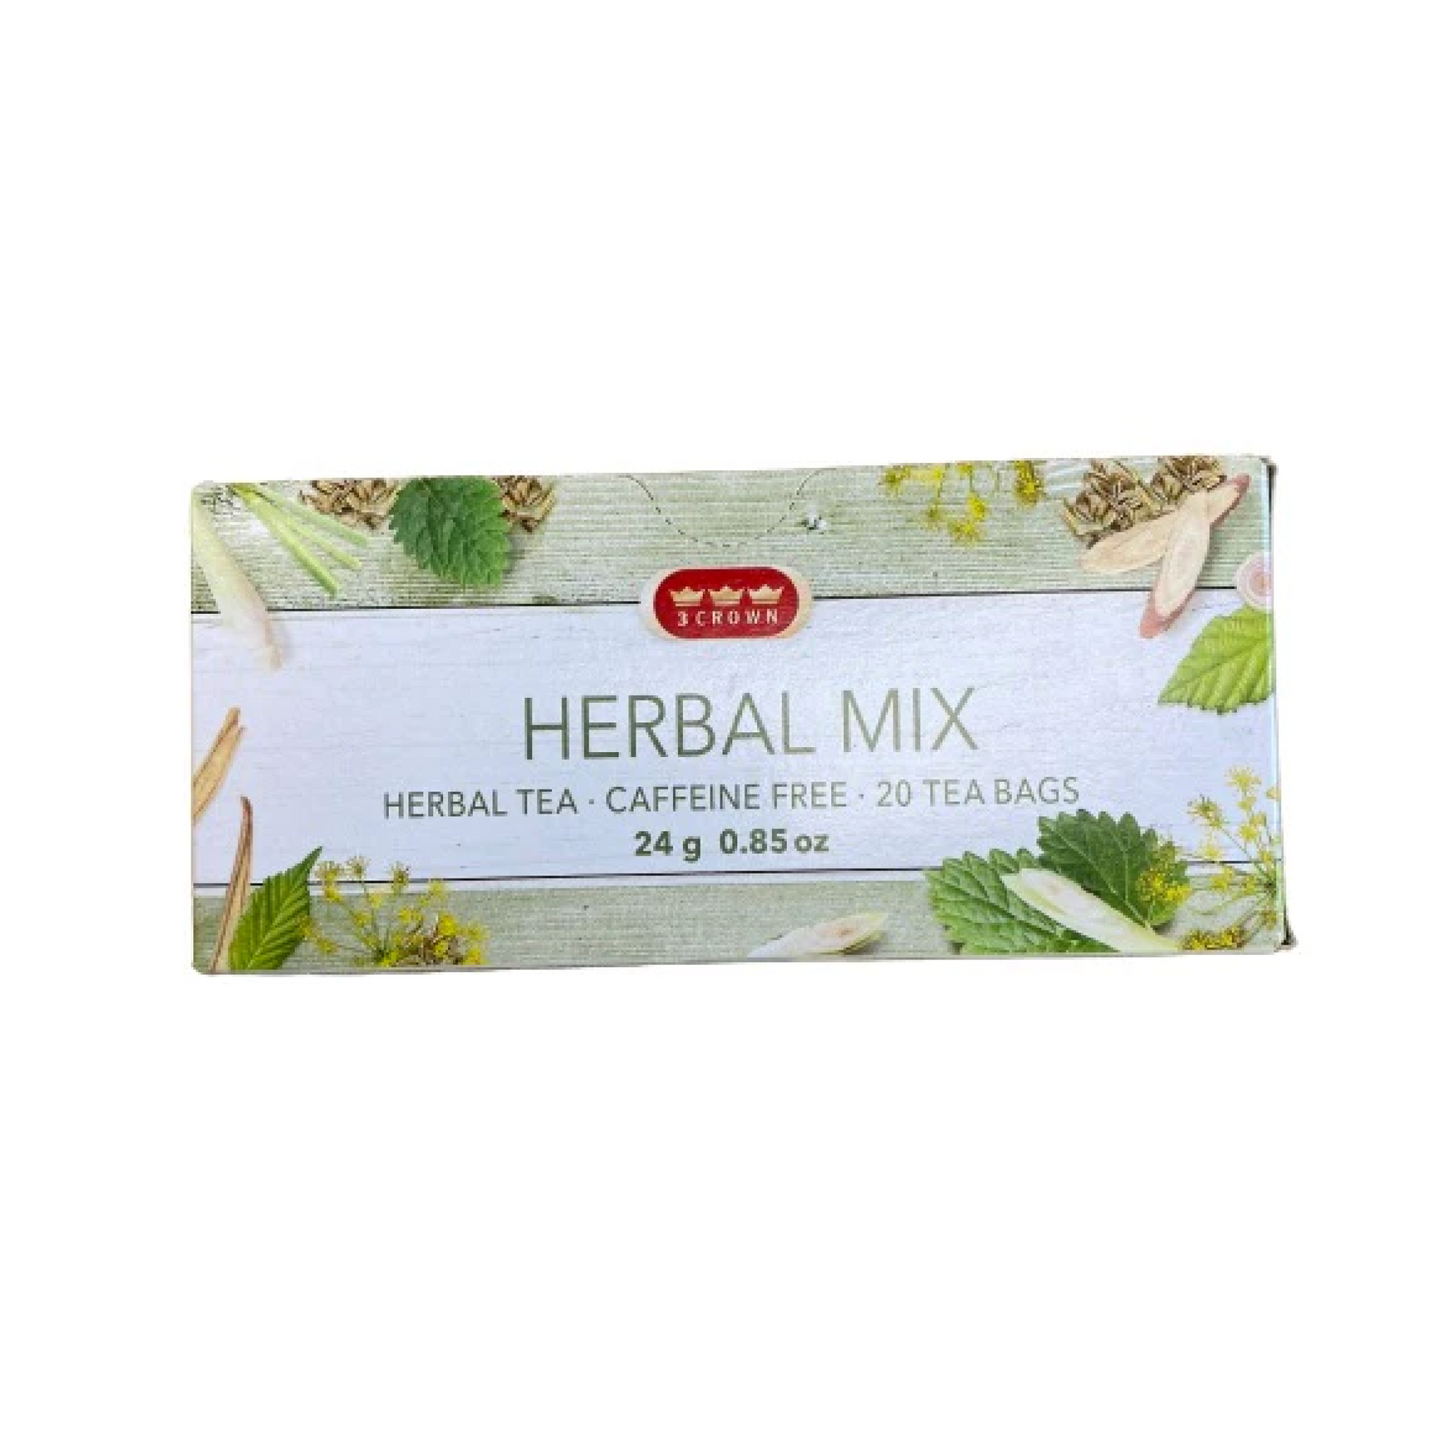 3 Crown Herbal Mix Herbal Tea  24g